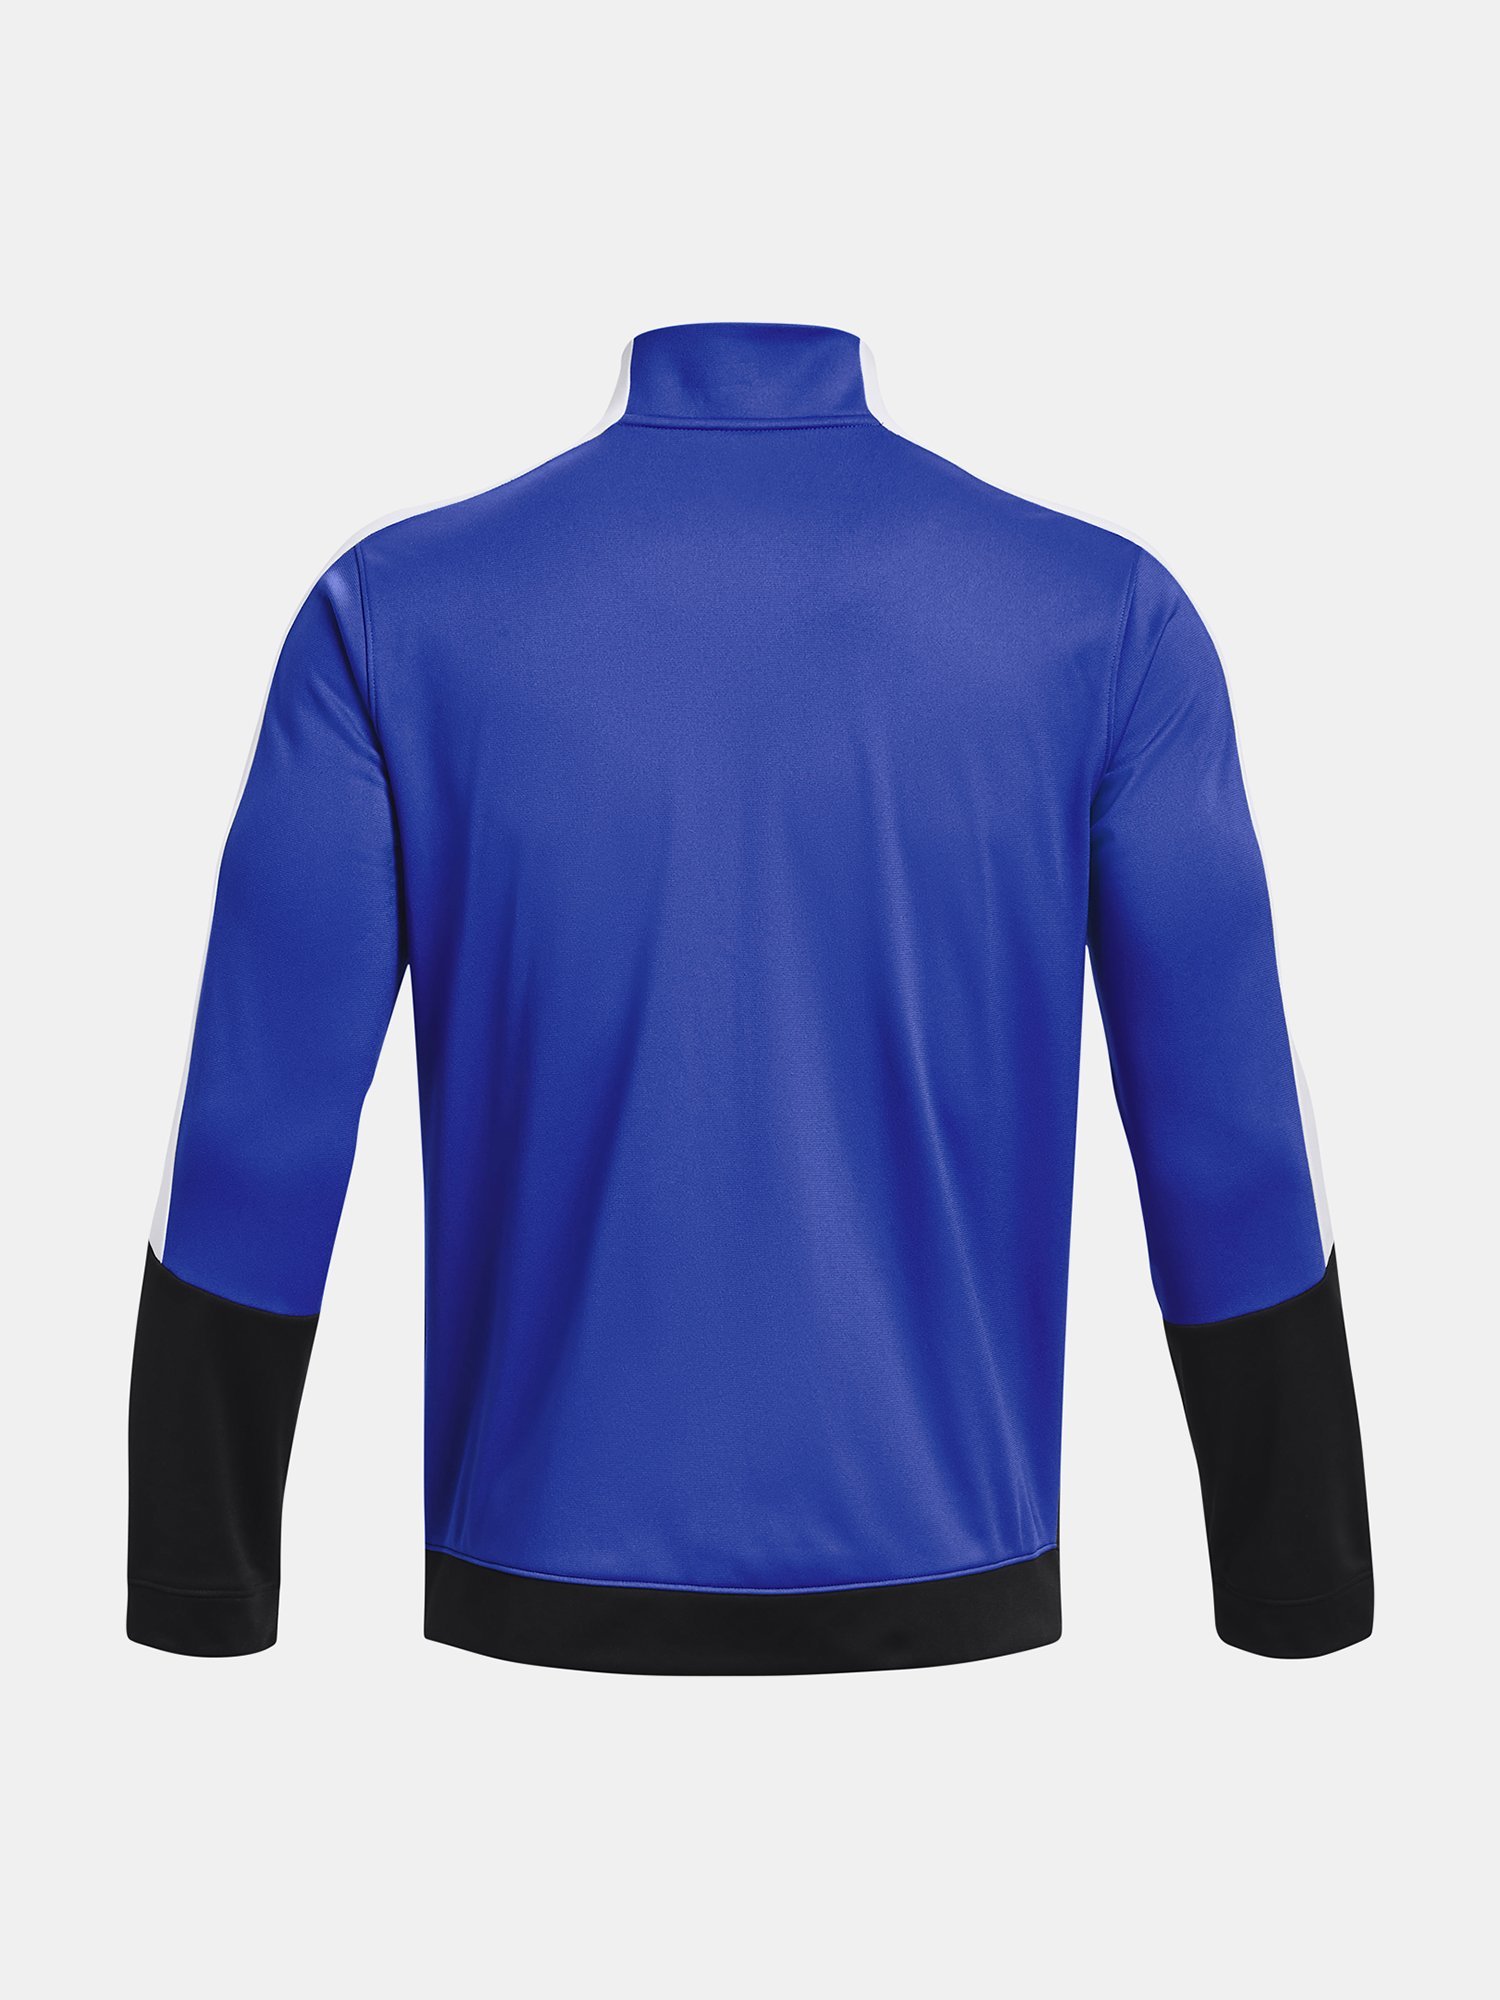 Bunda Under Armour UA Tricot Fashion Jacket modrá